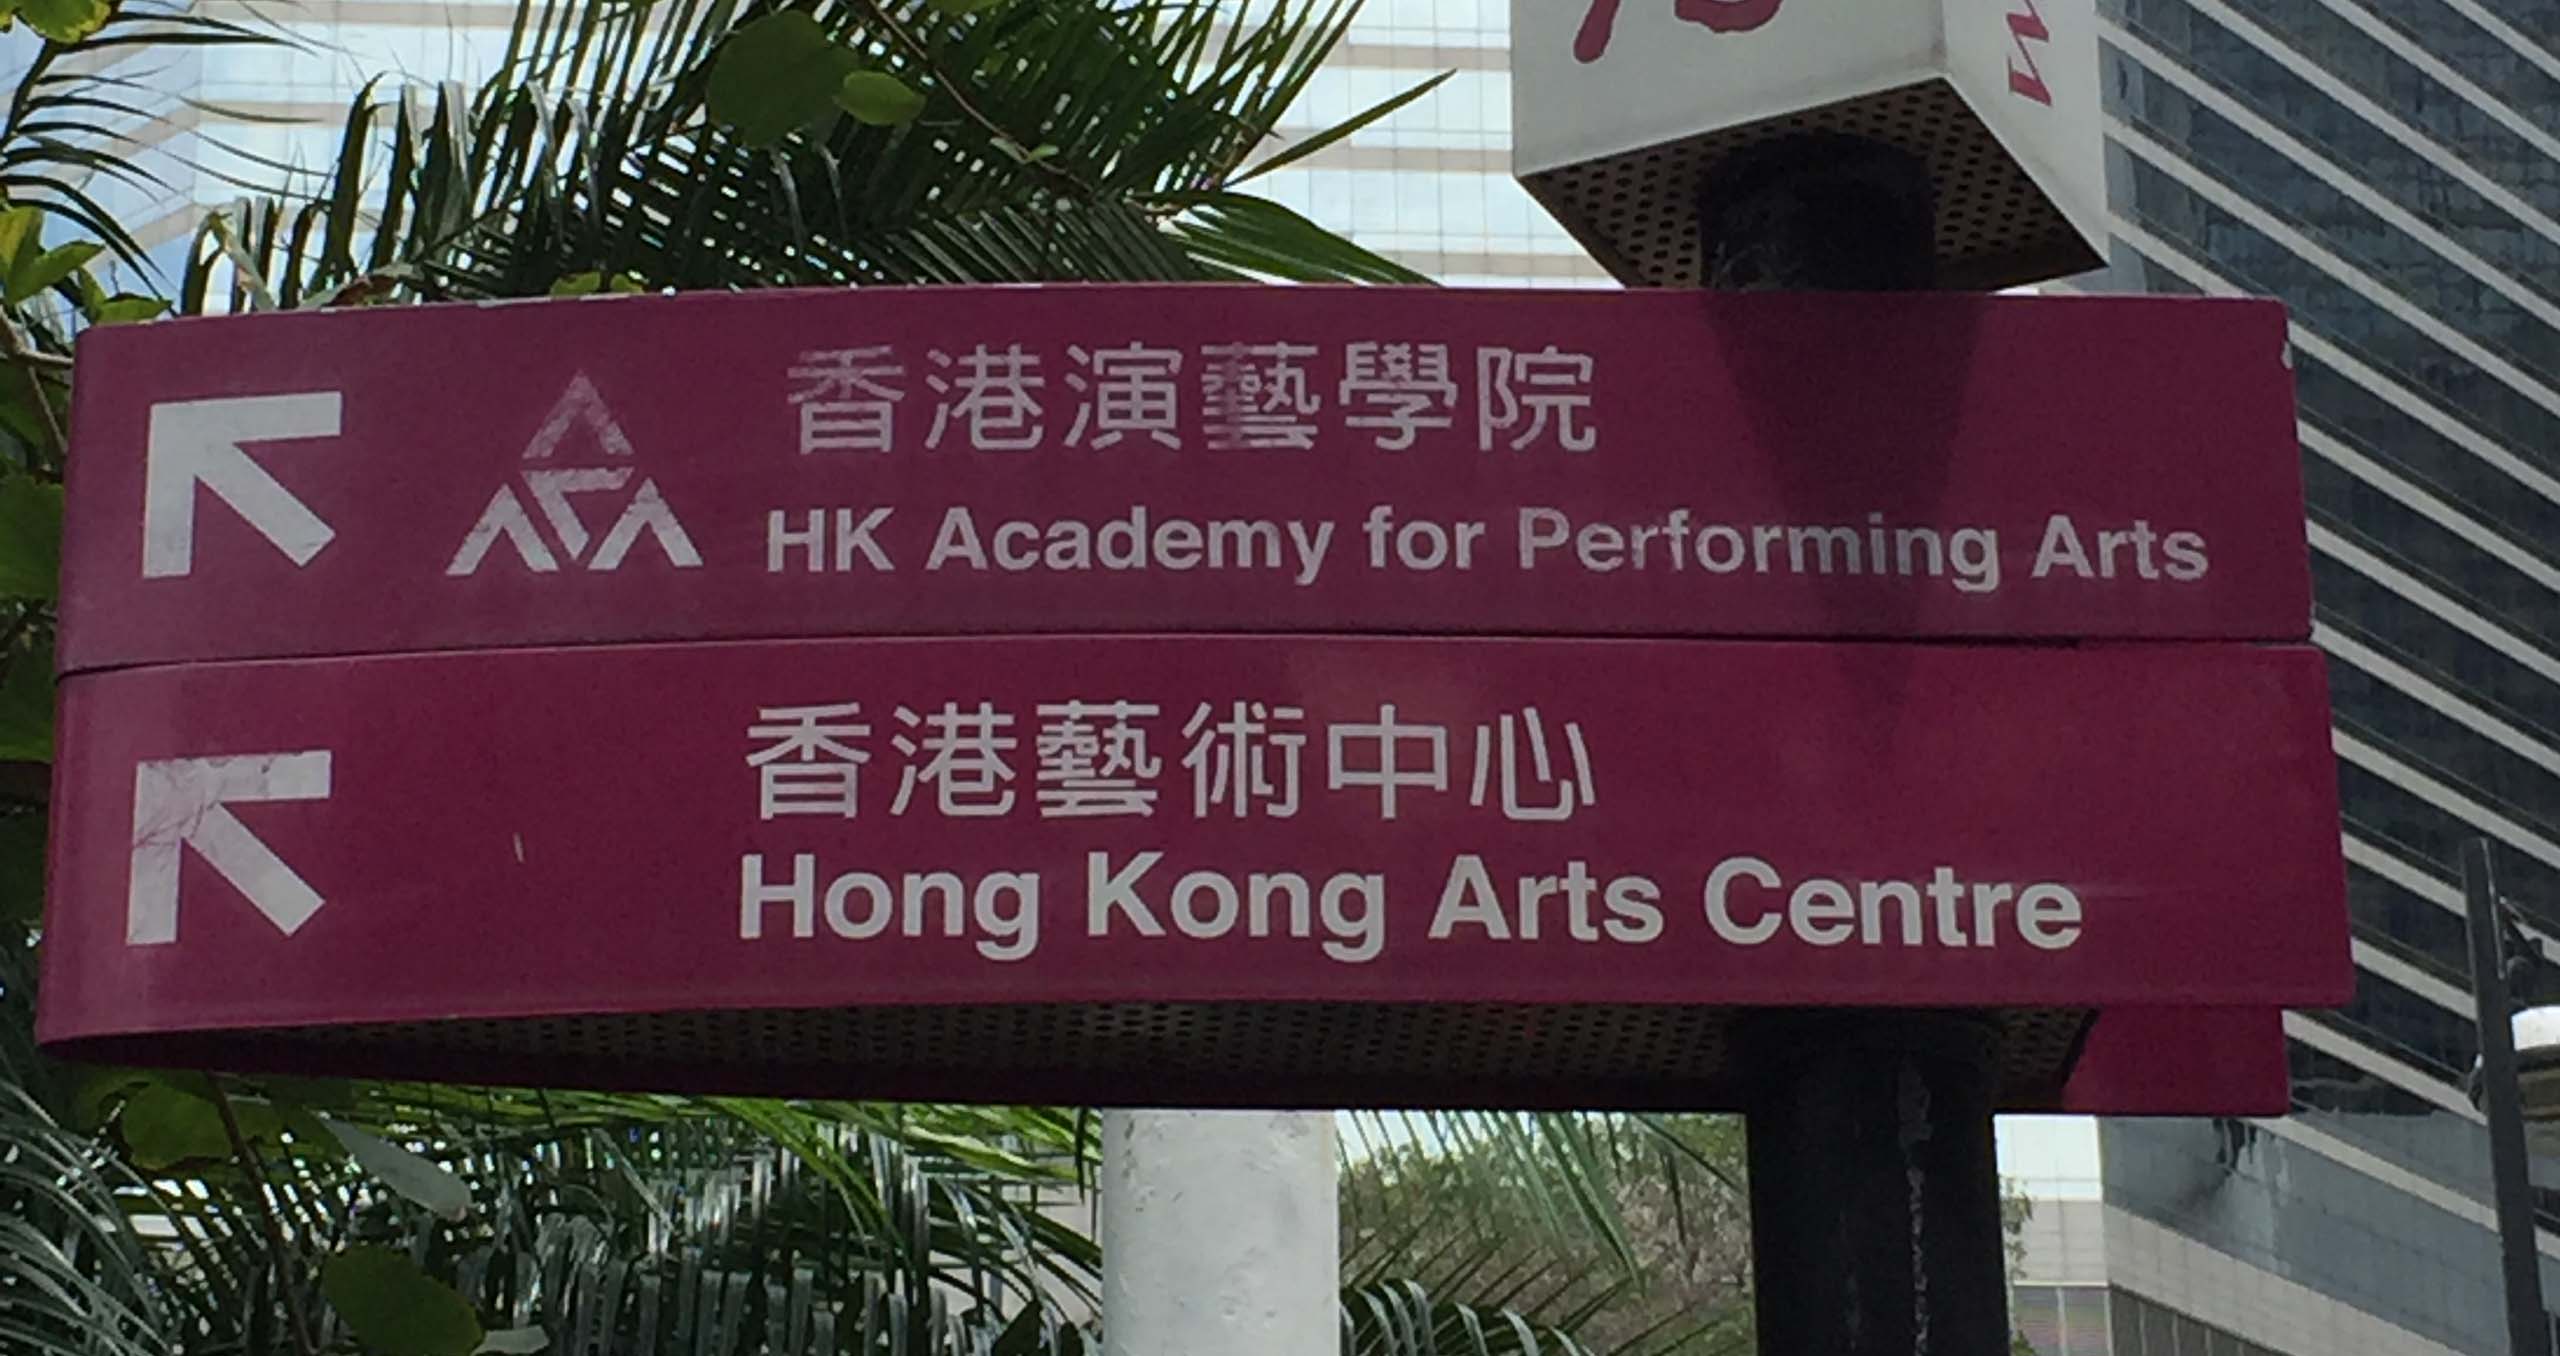 HONG KONG 2560x1356 - TEKENGEBIED 2